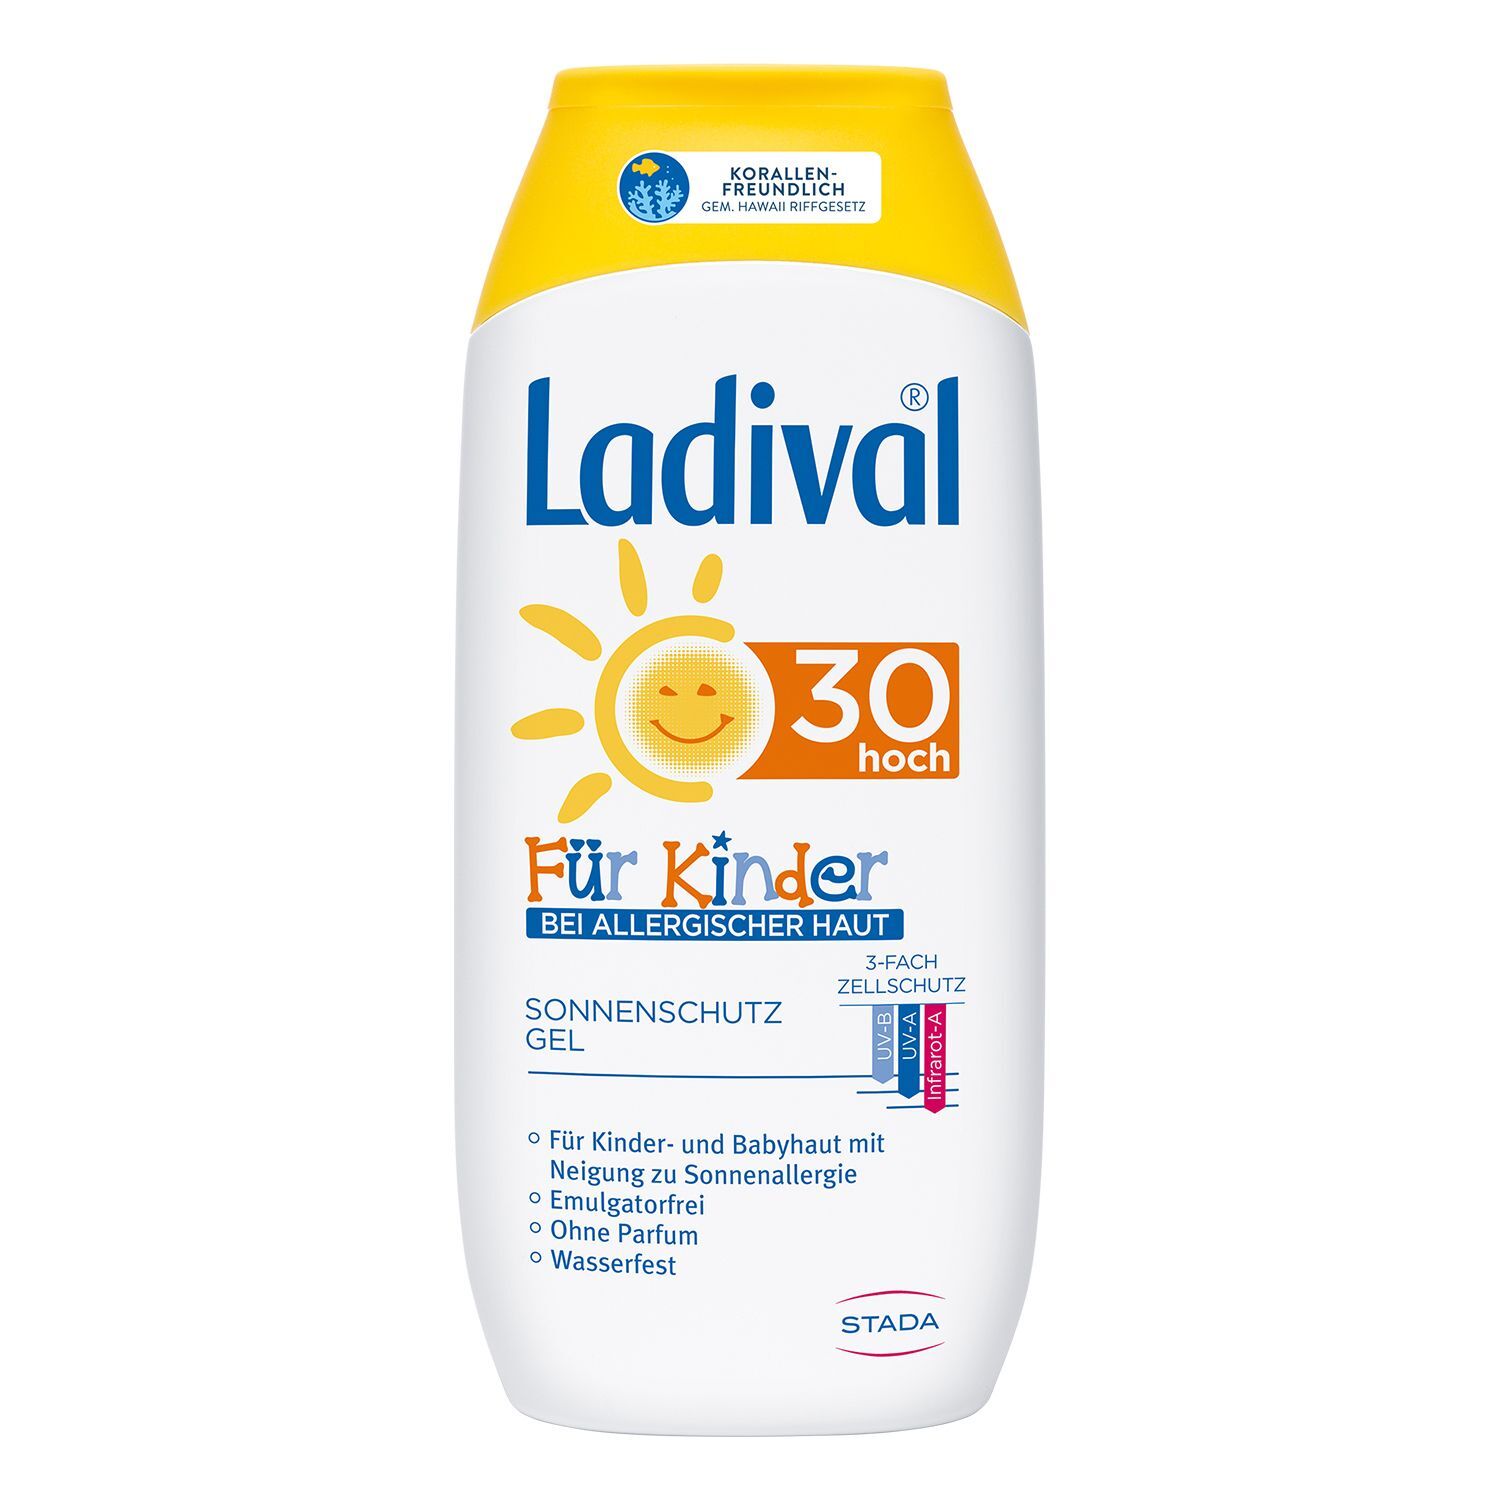 Ladival® Sonnenschutz Gel bei allergischer Haut für Kinder LSF 30